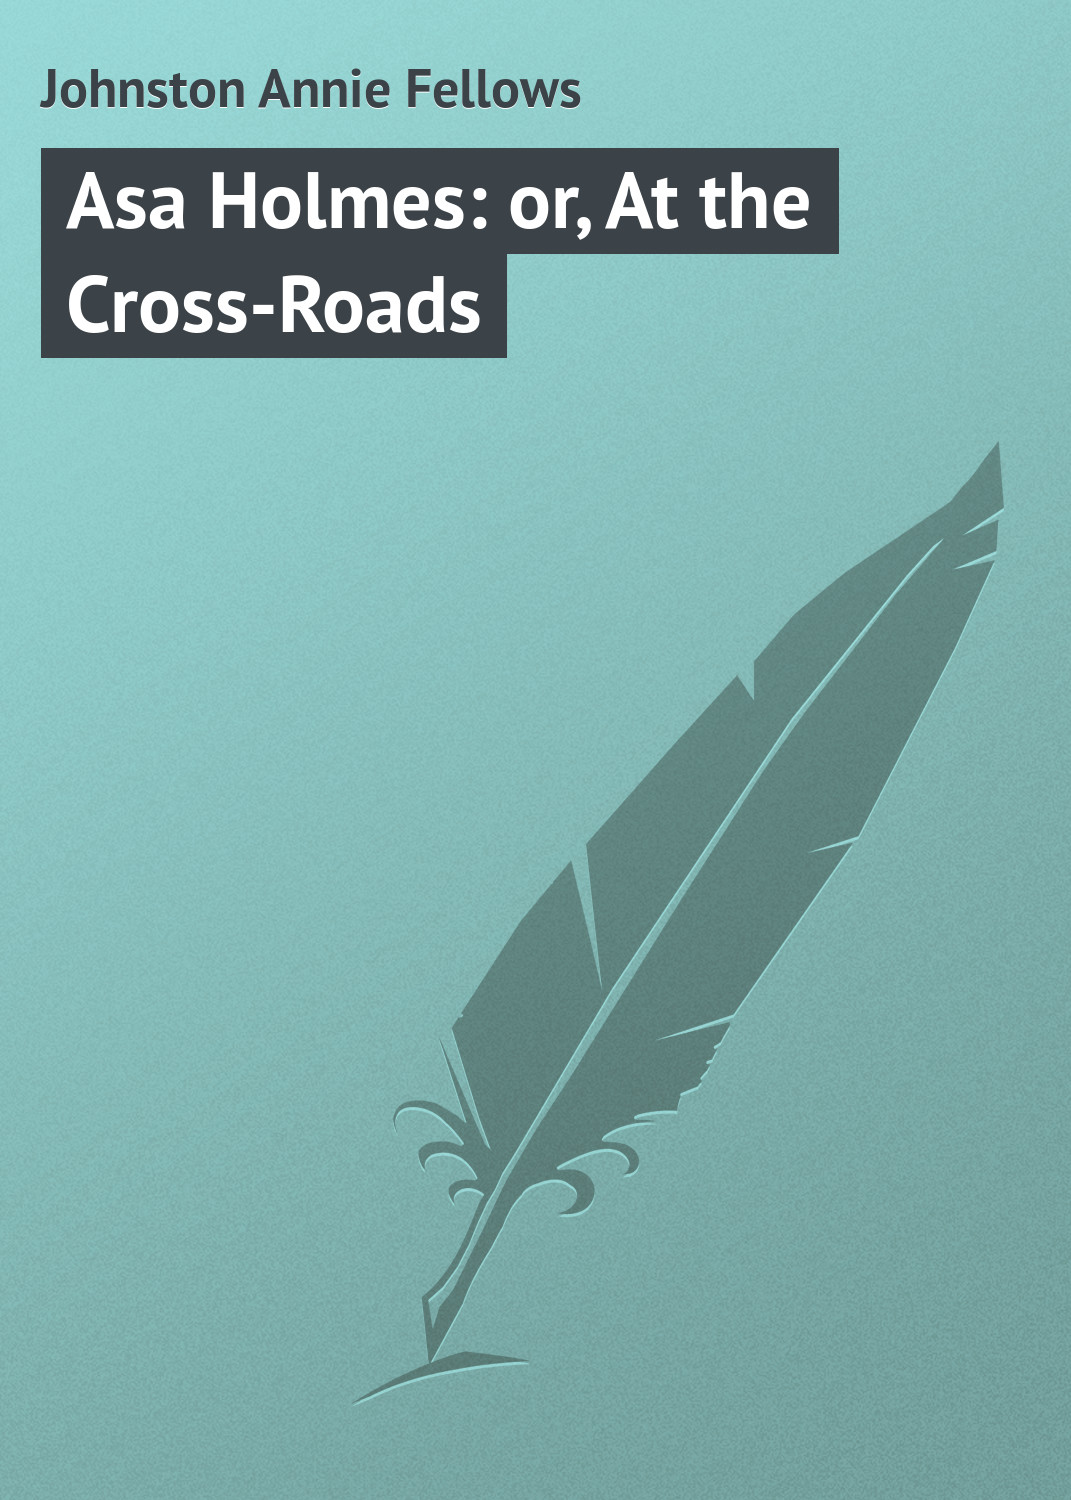 Книга Asa Holmes: or, At the Cross-Roads из серии , созданная Annie Johnston, может относится к жанру Зарубежная классика. Стоимость электронной книги Asa Holmes: or, At the Cross-Roads с идентификатором 23164683 составляет 5.99 руб.